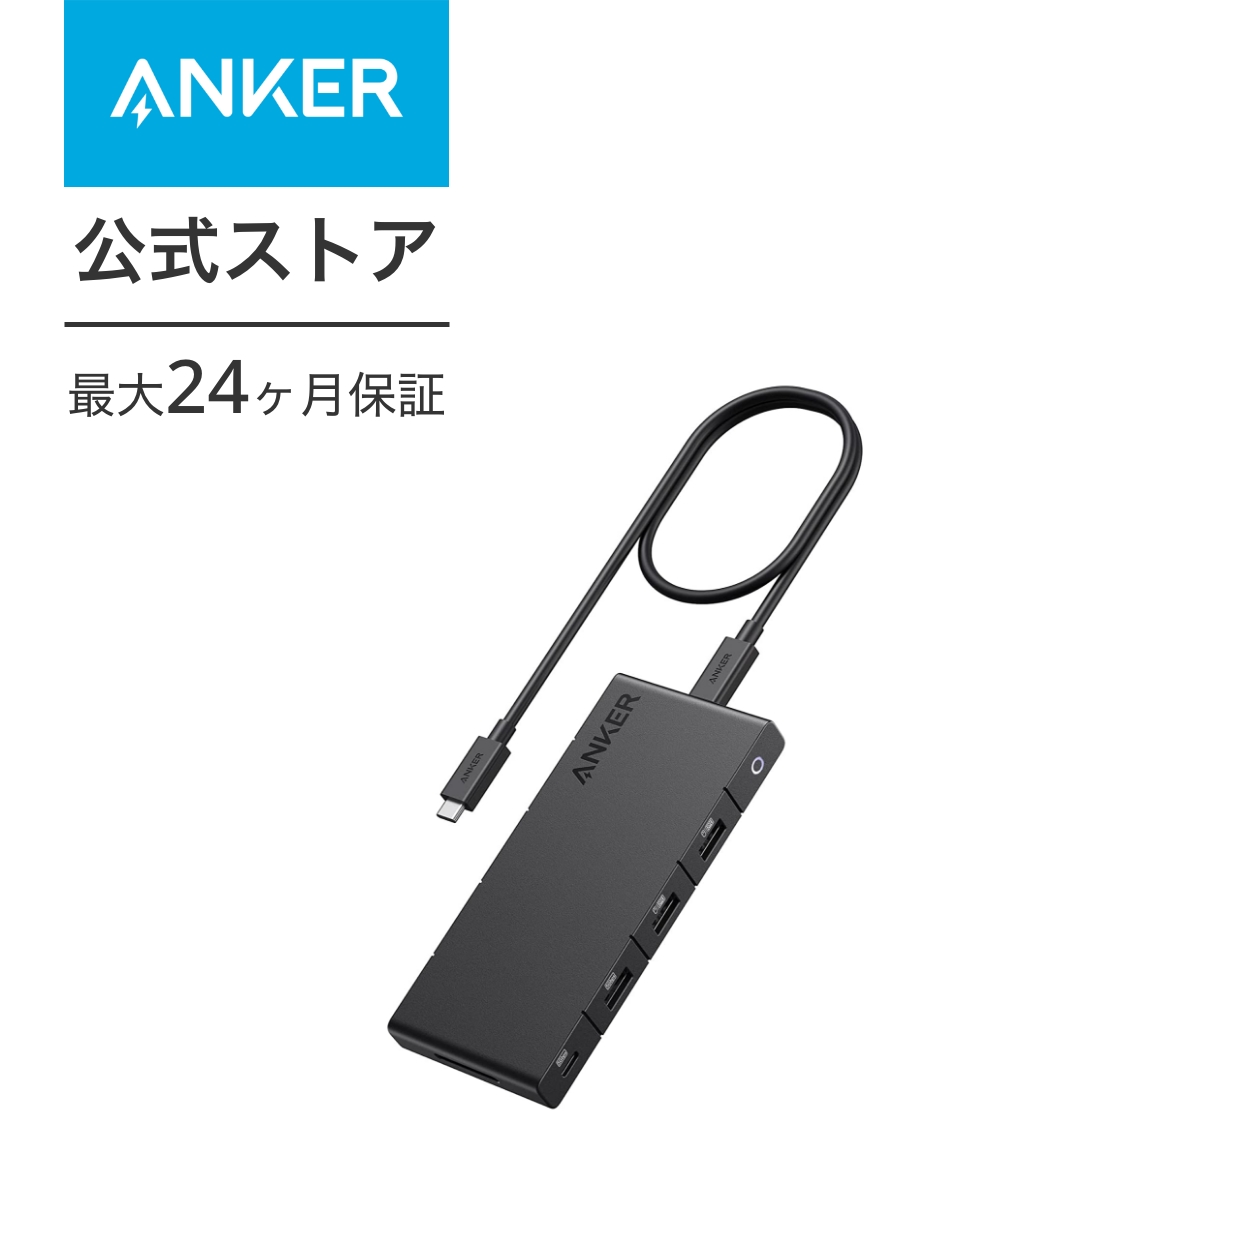 Anker 364 USB-C ハブ (10-in-1, Dual 4K HDMI) 100W USB PD対応 4K HDMIポート 2画面出力 着脱式ケーブル 50cm SDカードスロット イーサネットポート 5Gbps 高速データ転送 USB-Cポート USB-Aポート搭載